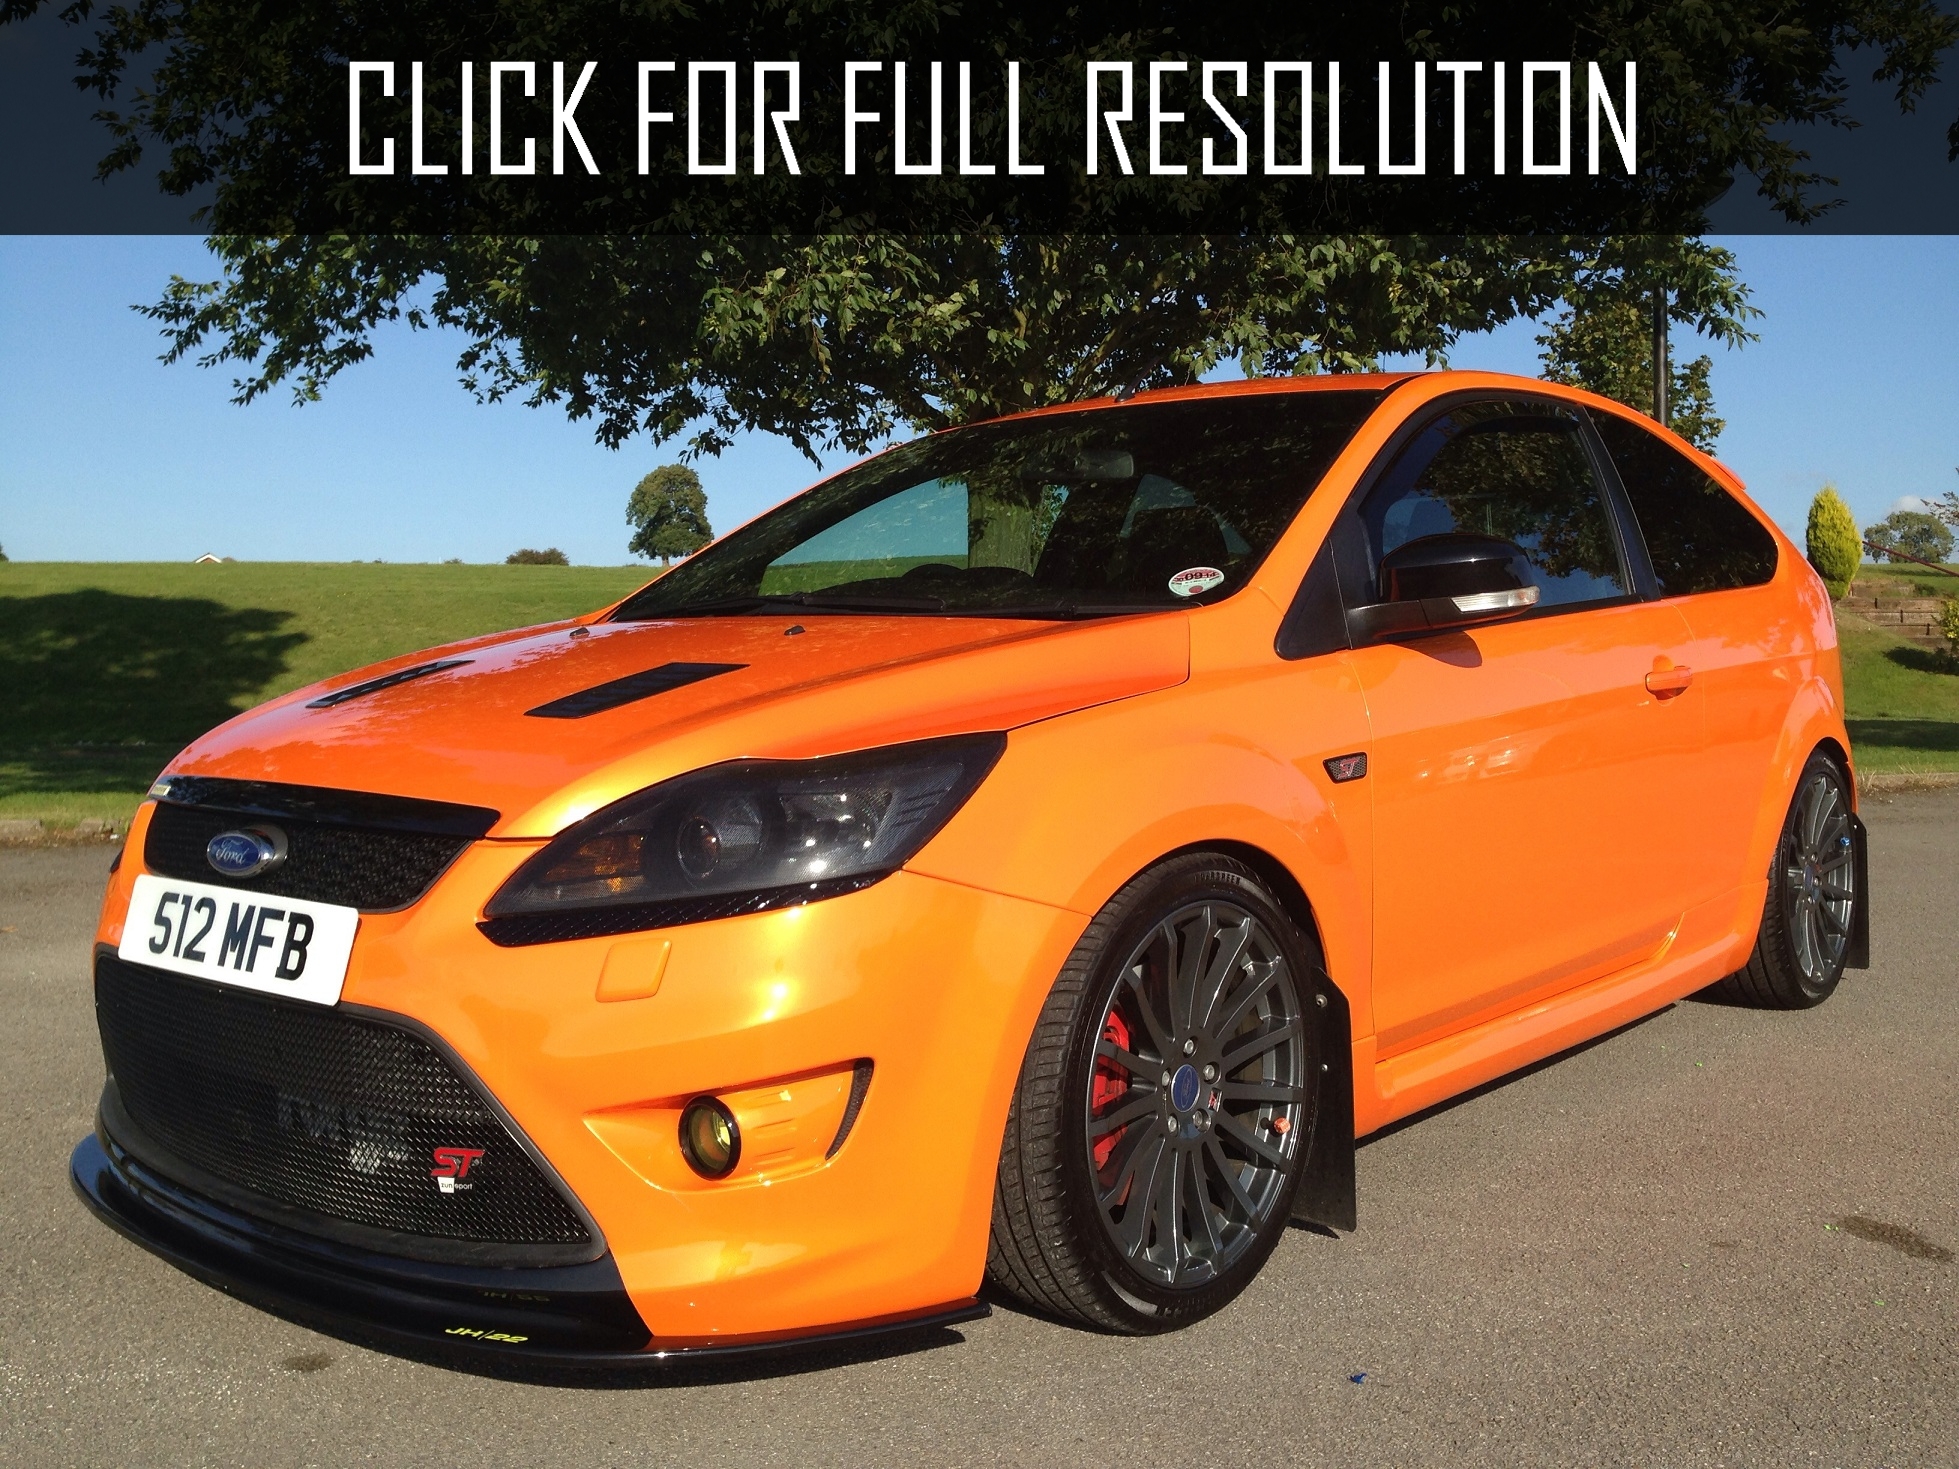 Ford Focus RS Orange